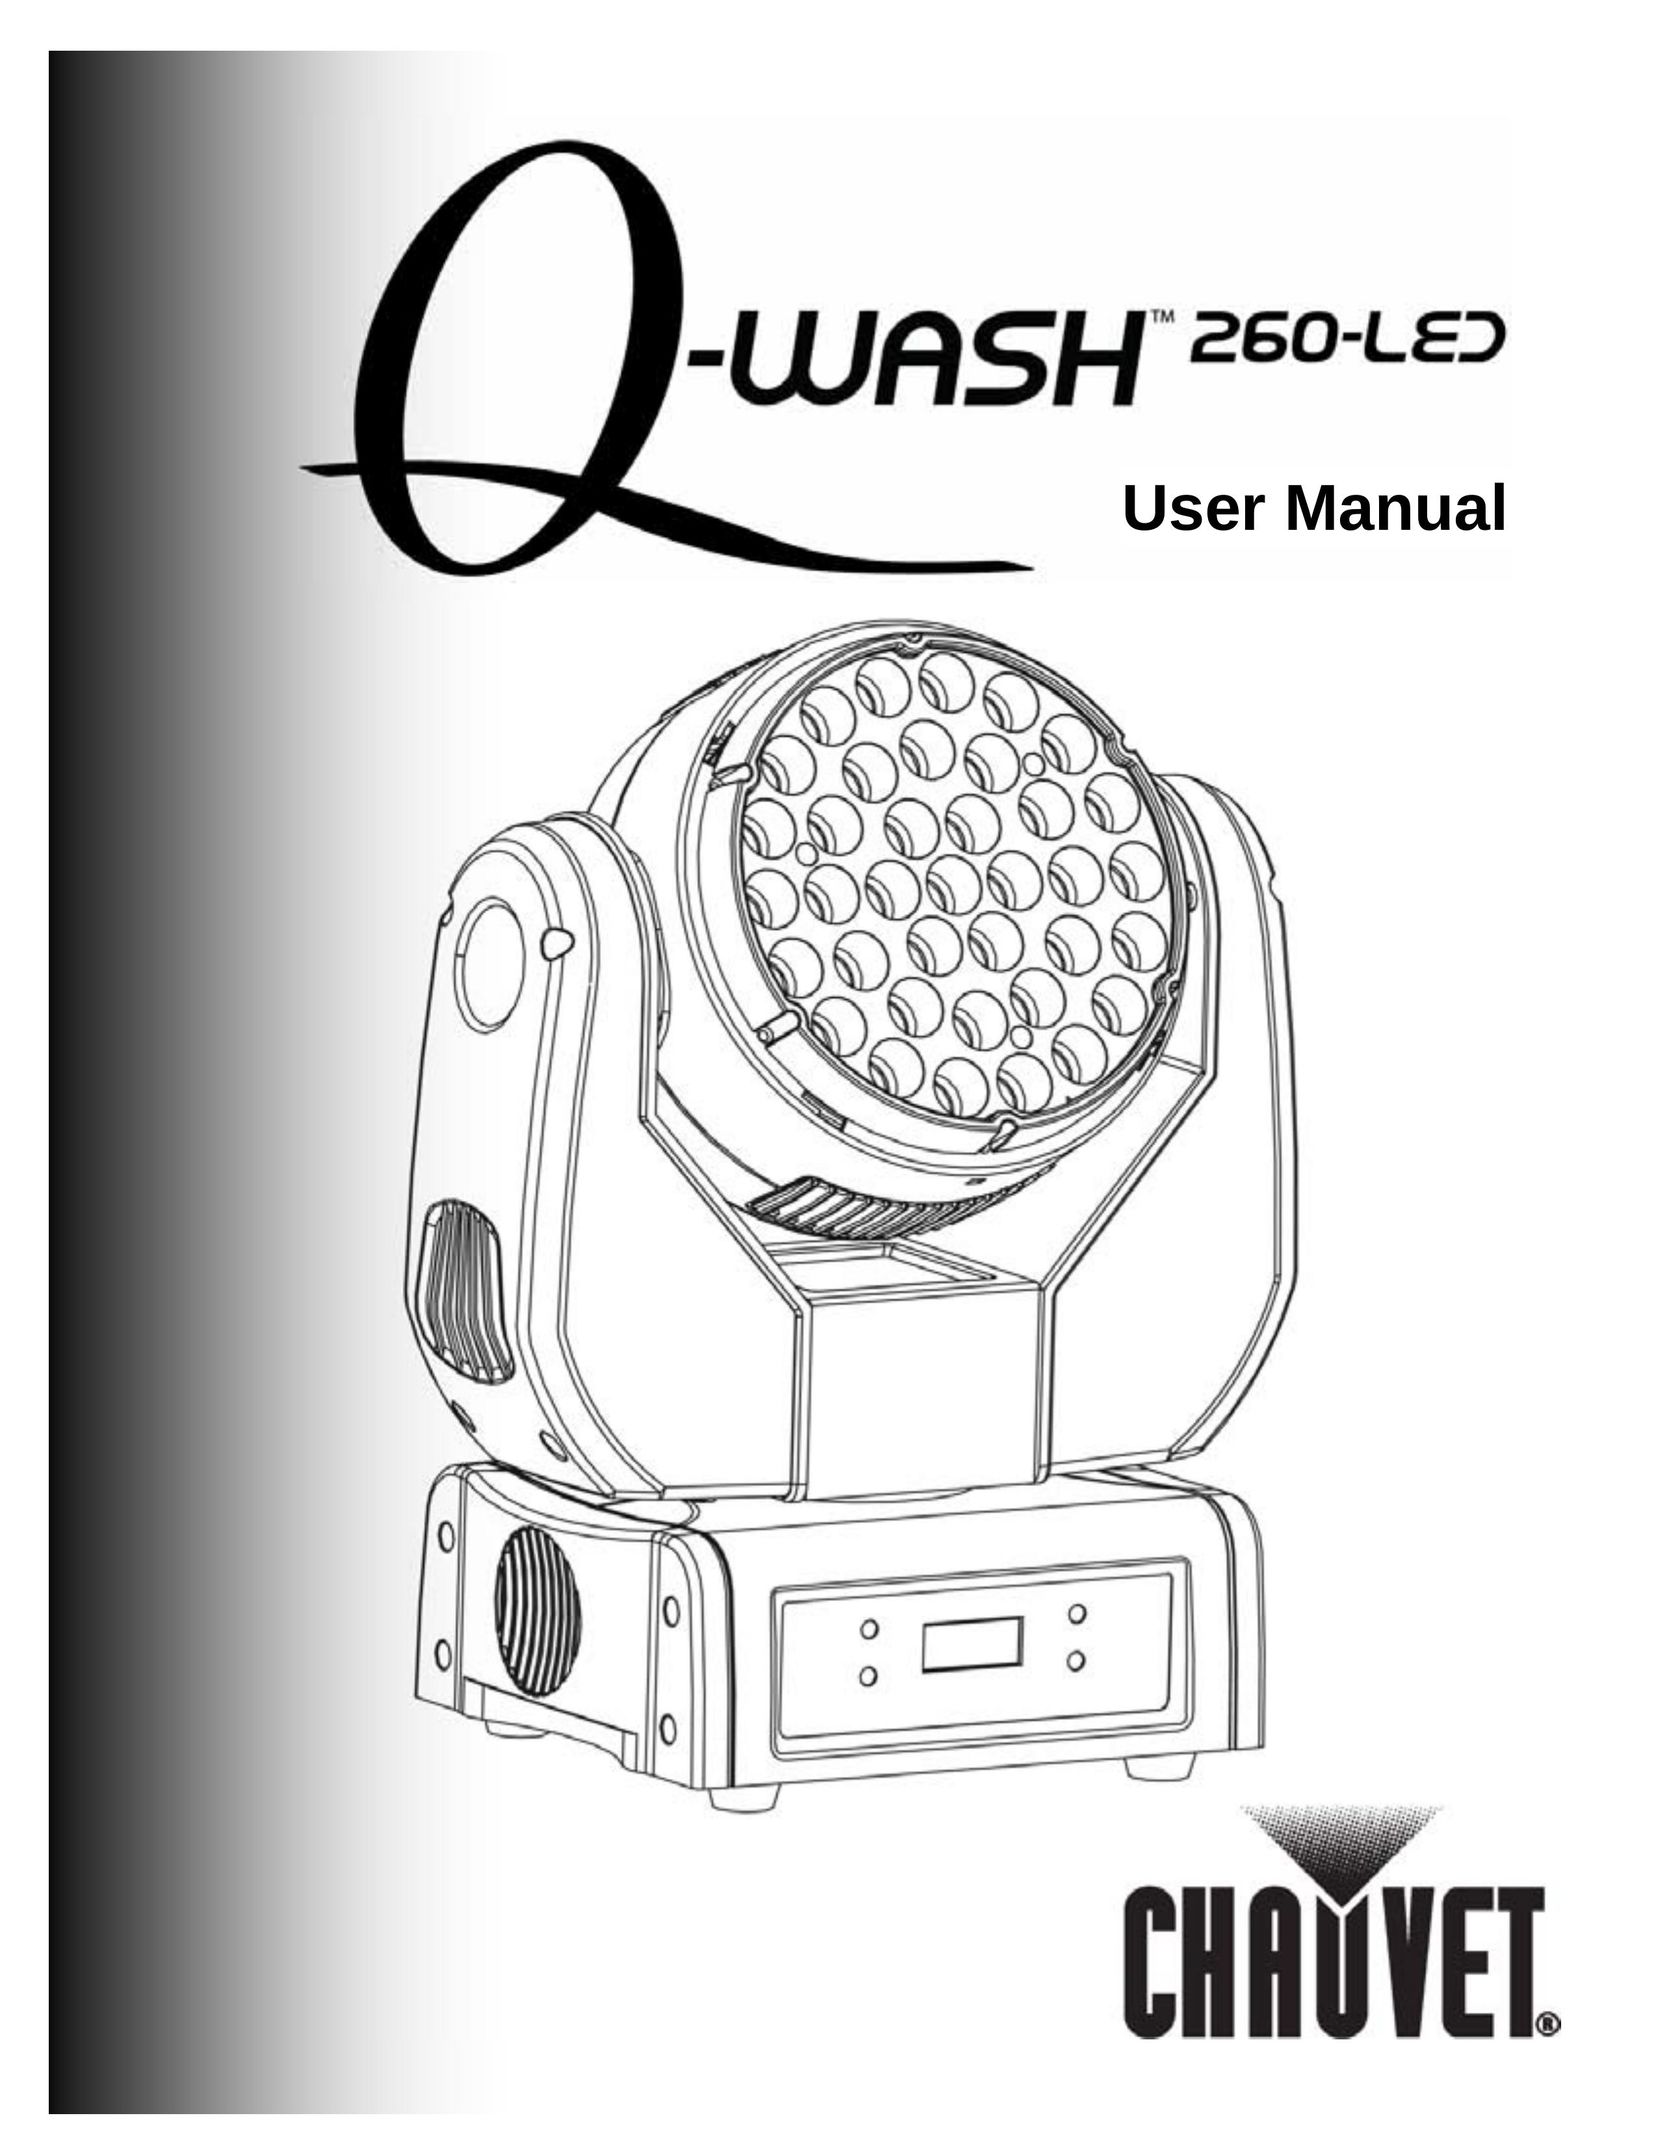 Chauvet 260-LED Work Light User Manual